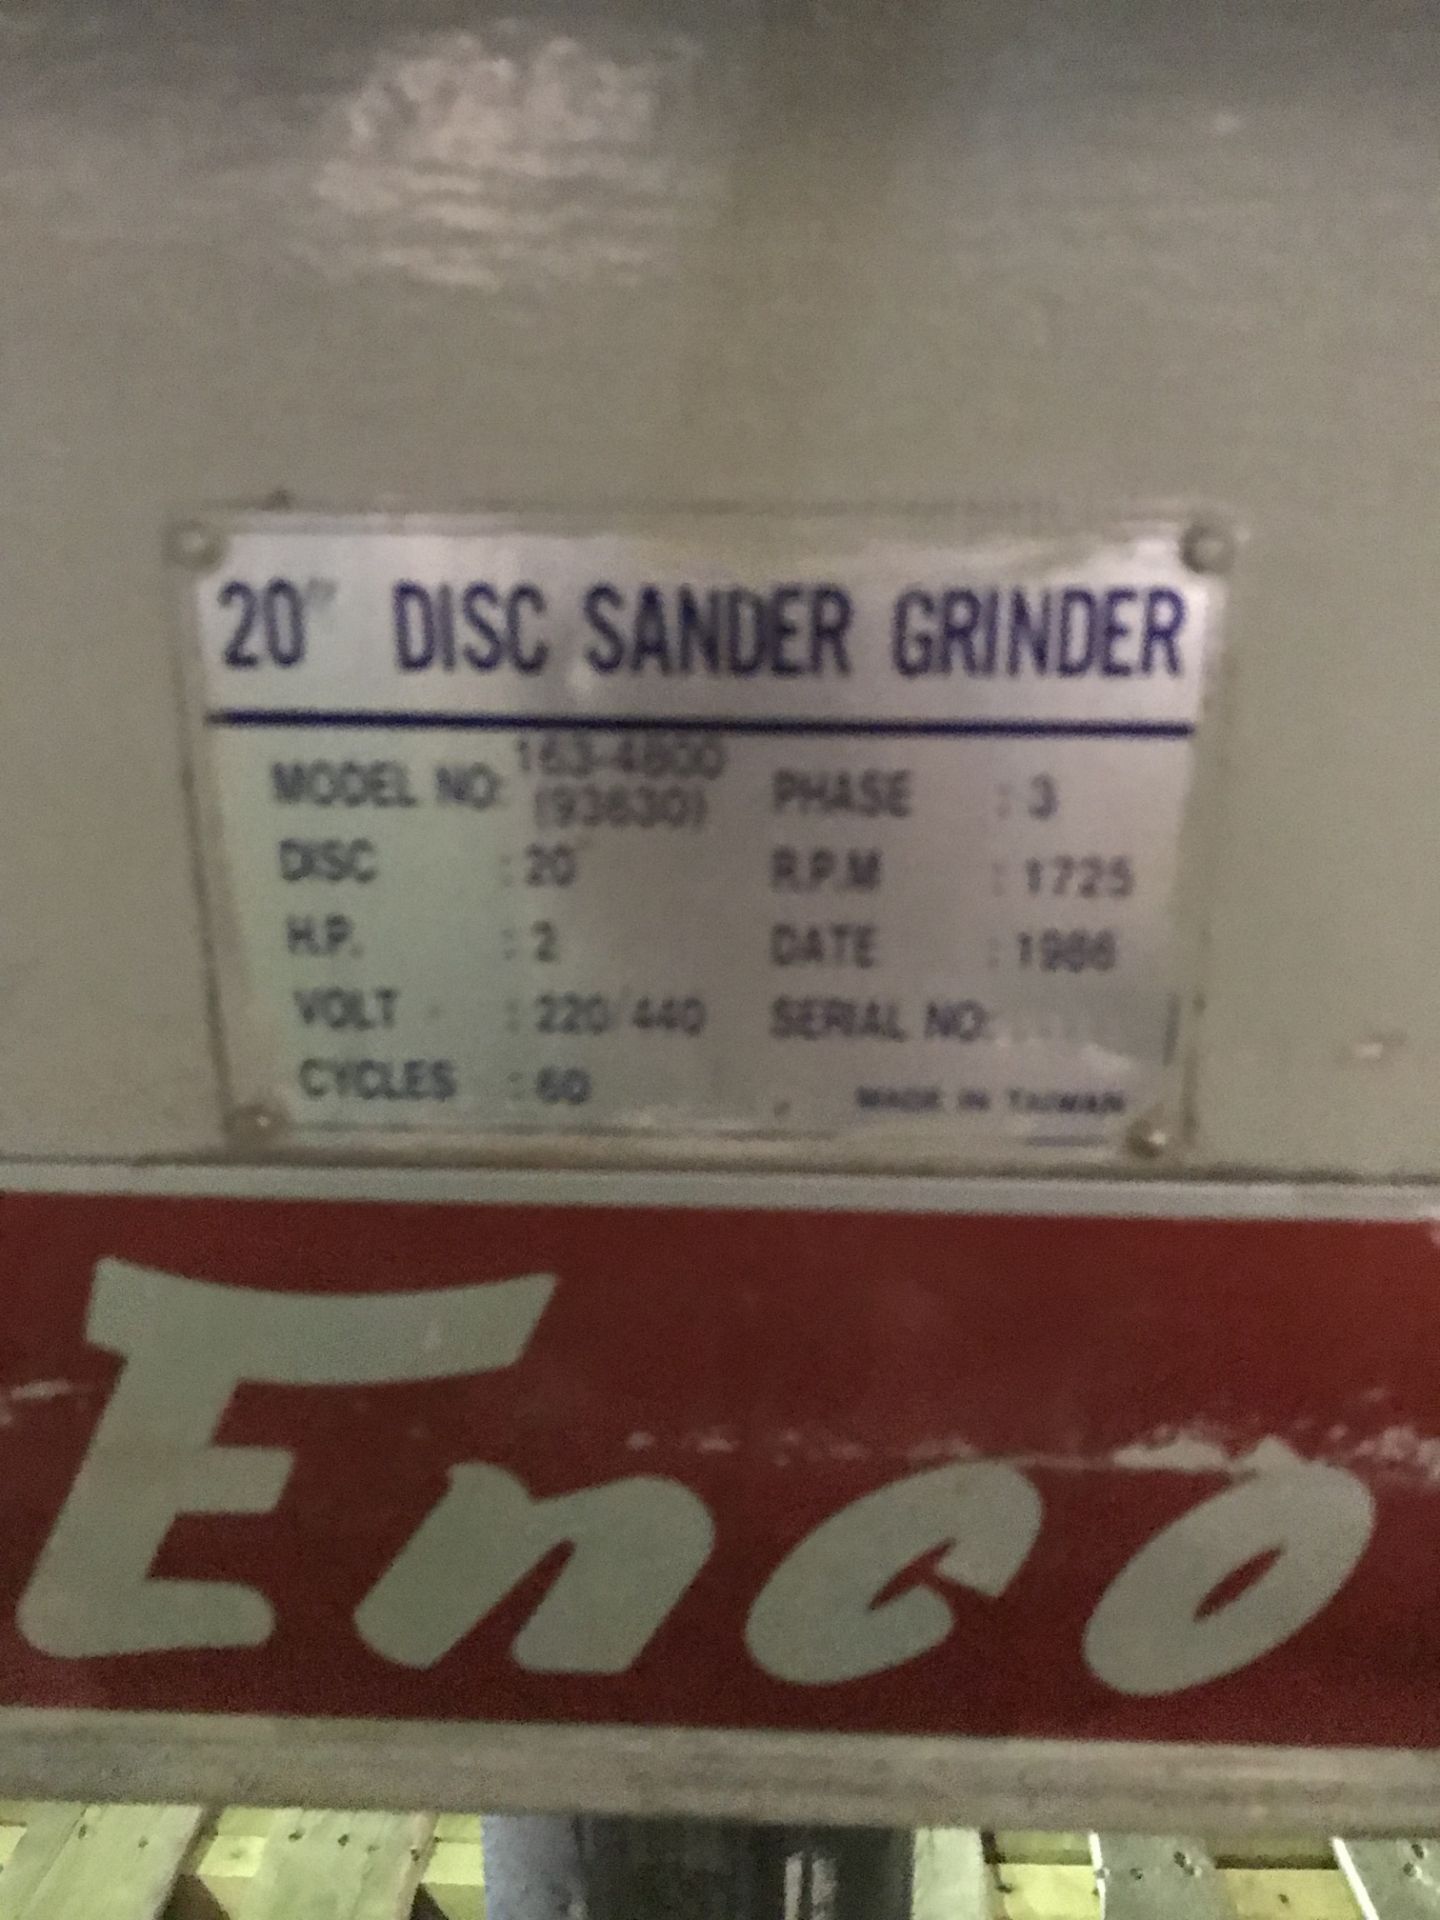 20" Enco Disc Sander/Grinder, Model 163-4800, 20" Disc, RPM: 1725, HP: 2 - Image 3 of 4